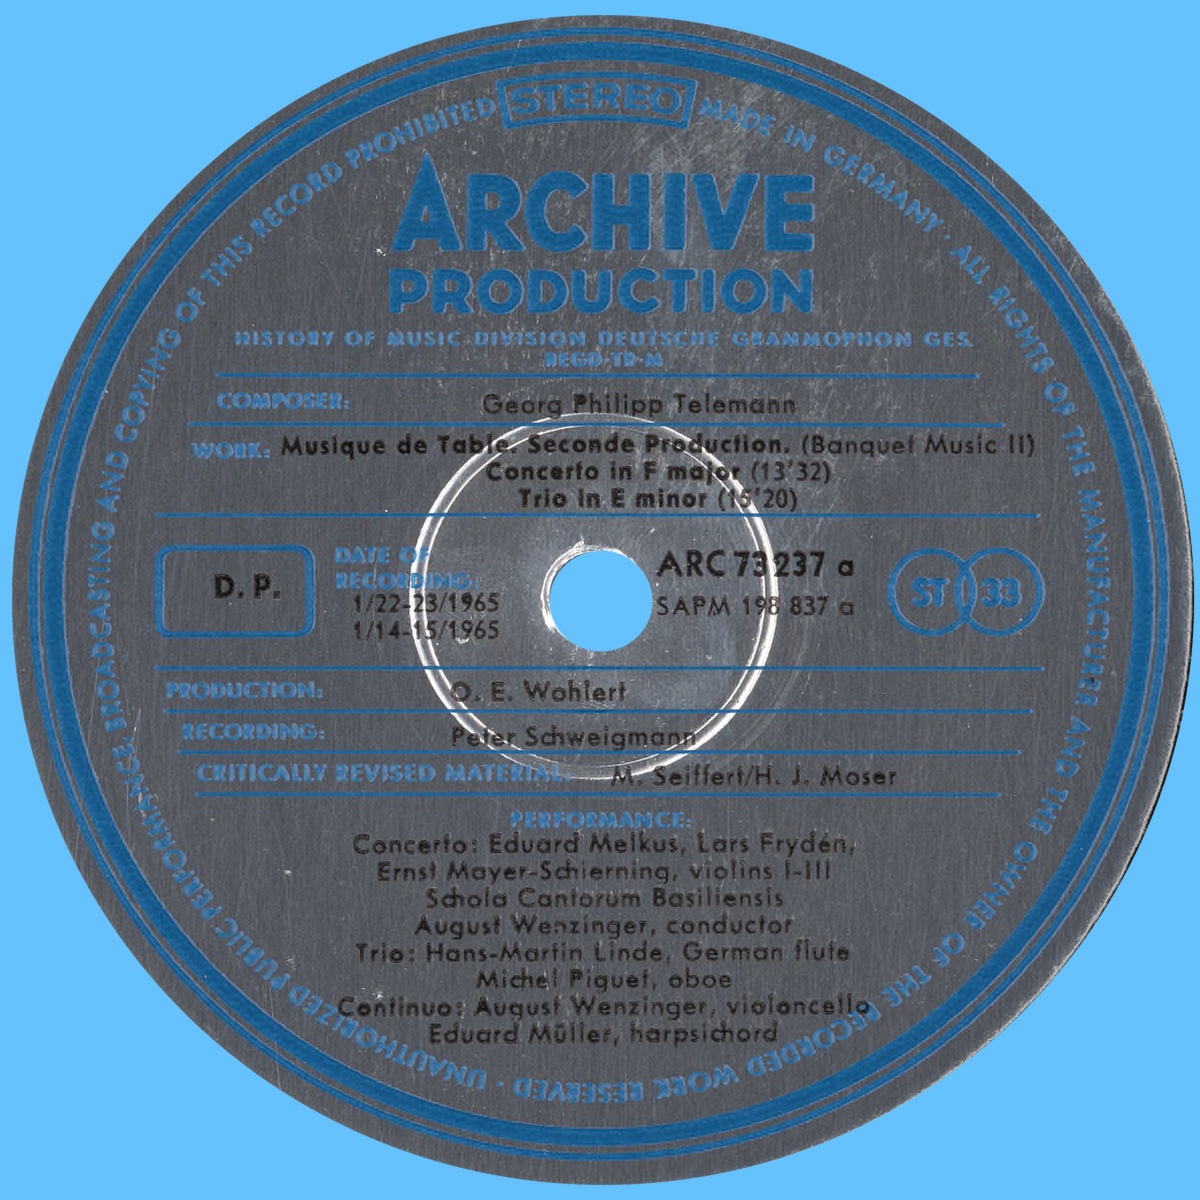 Étiquette recto du second disque de l'album Archiv Produktion SAPM 198836-37